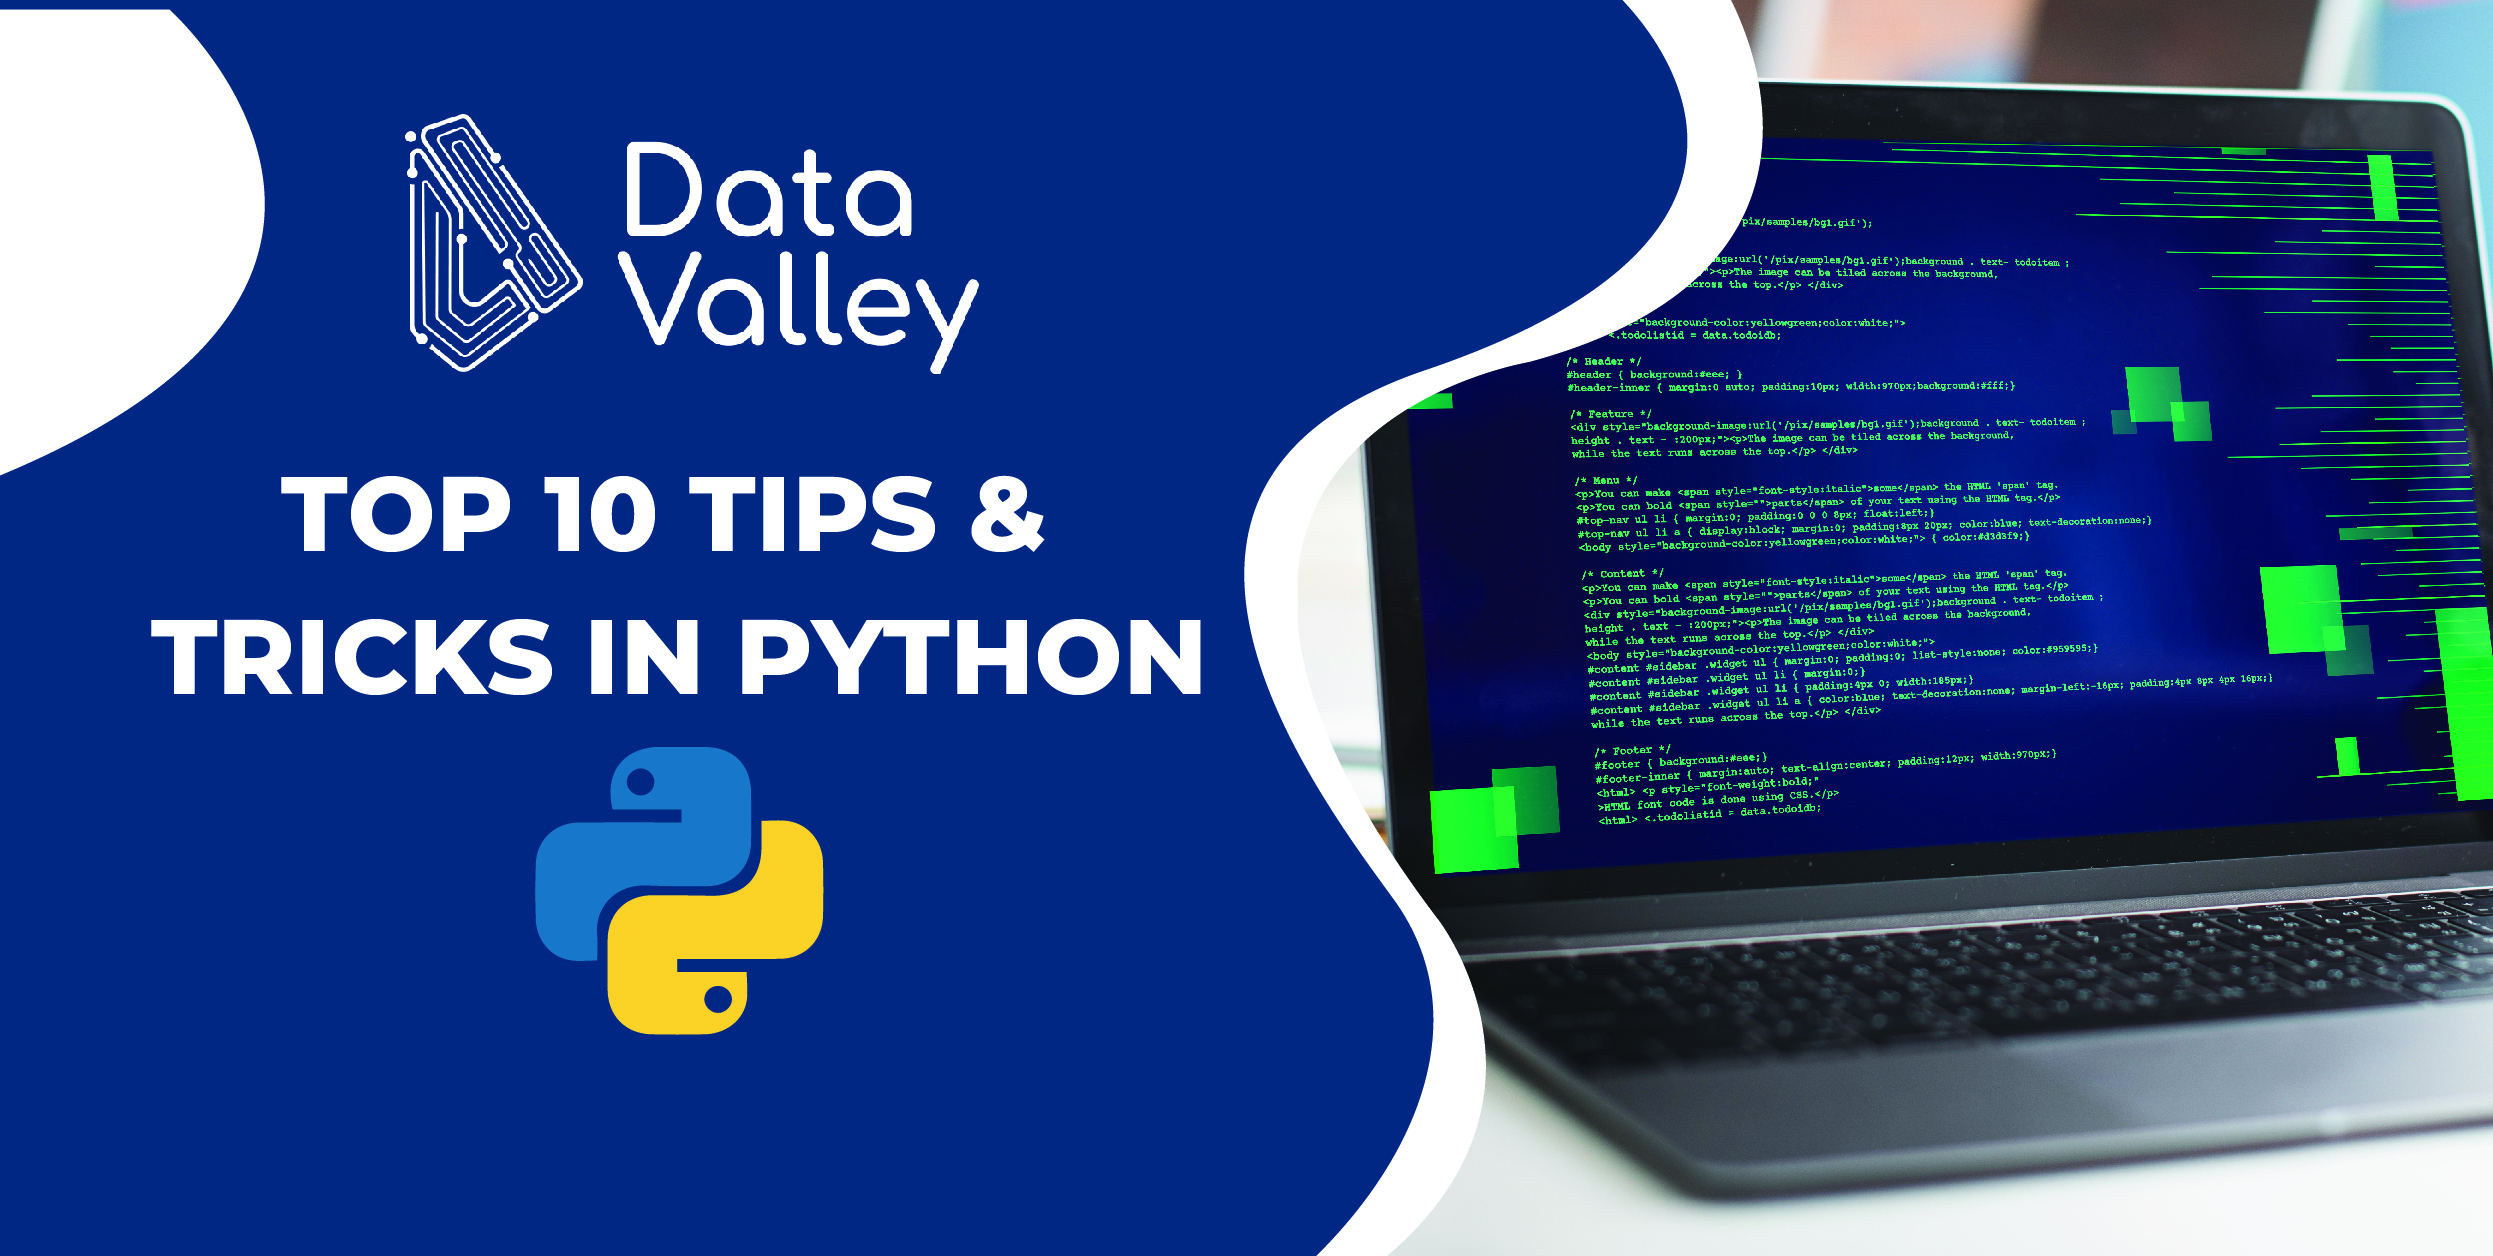 Python là một ngôn ngữ lập trình phổ biến và dễ học, và viết code là một kỹ năng quan trọng trong ngành CNTT. Hãy xem ảnh liên quan để có những mẹo và thủ thuật để viết code hiệu quả và nhanh chóng hơn.